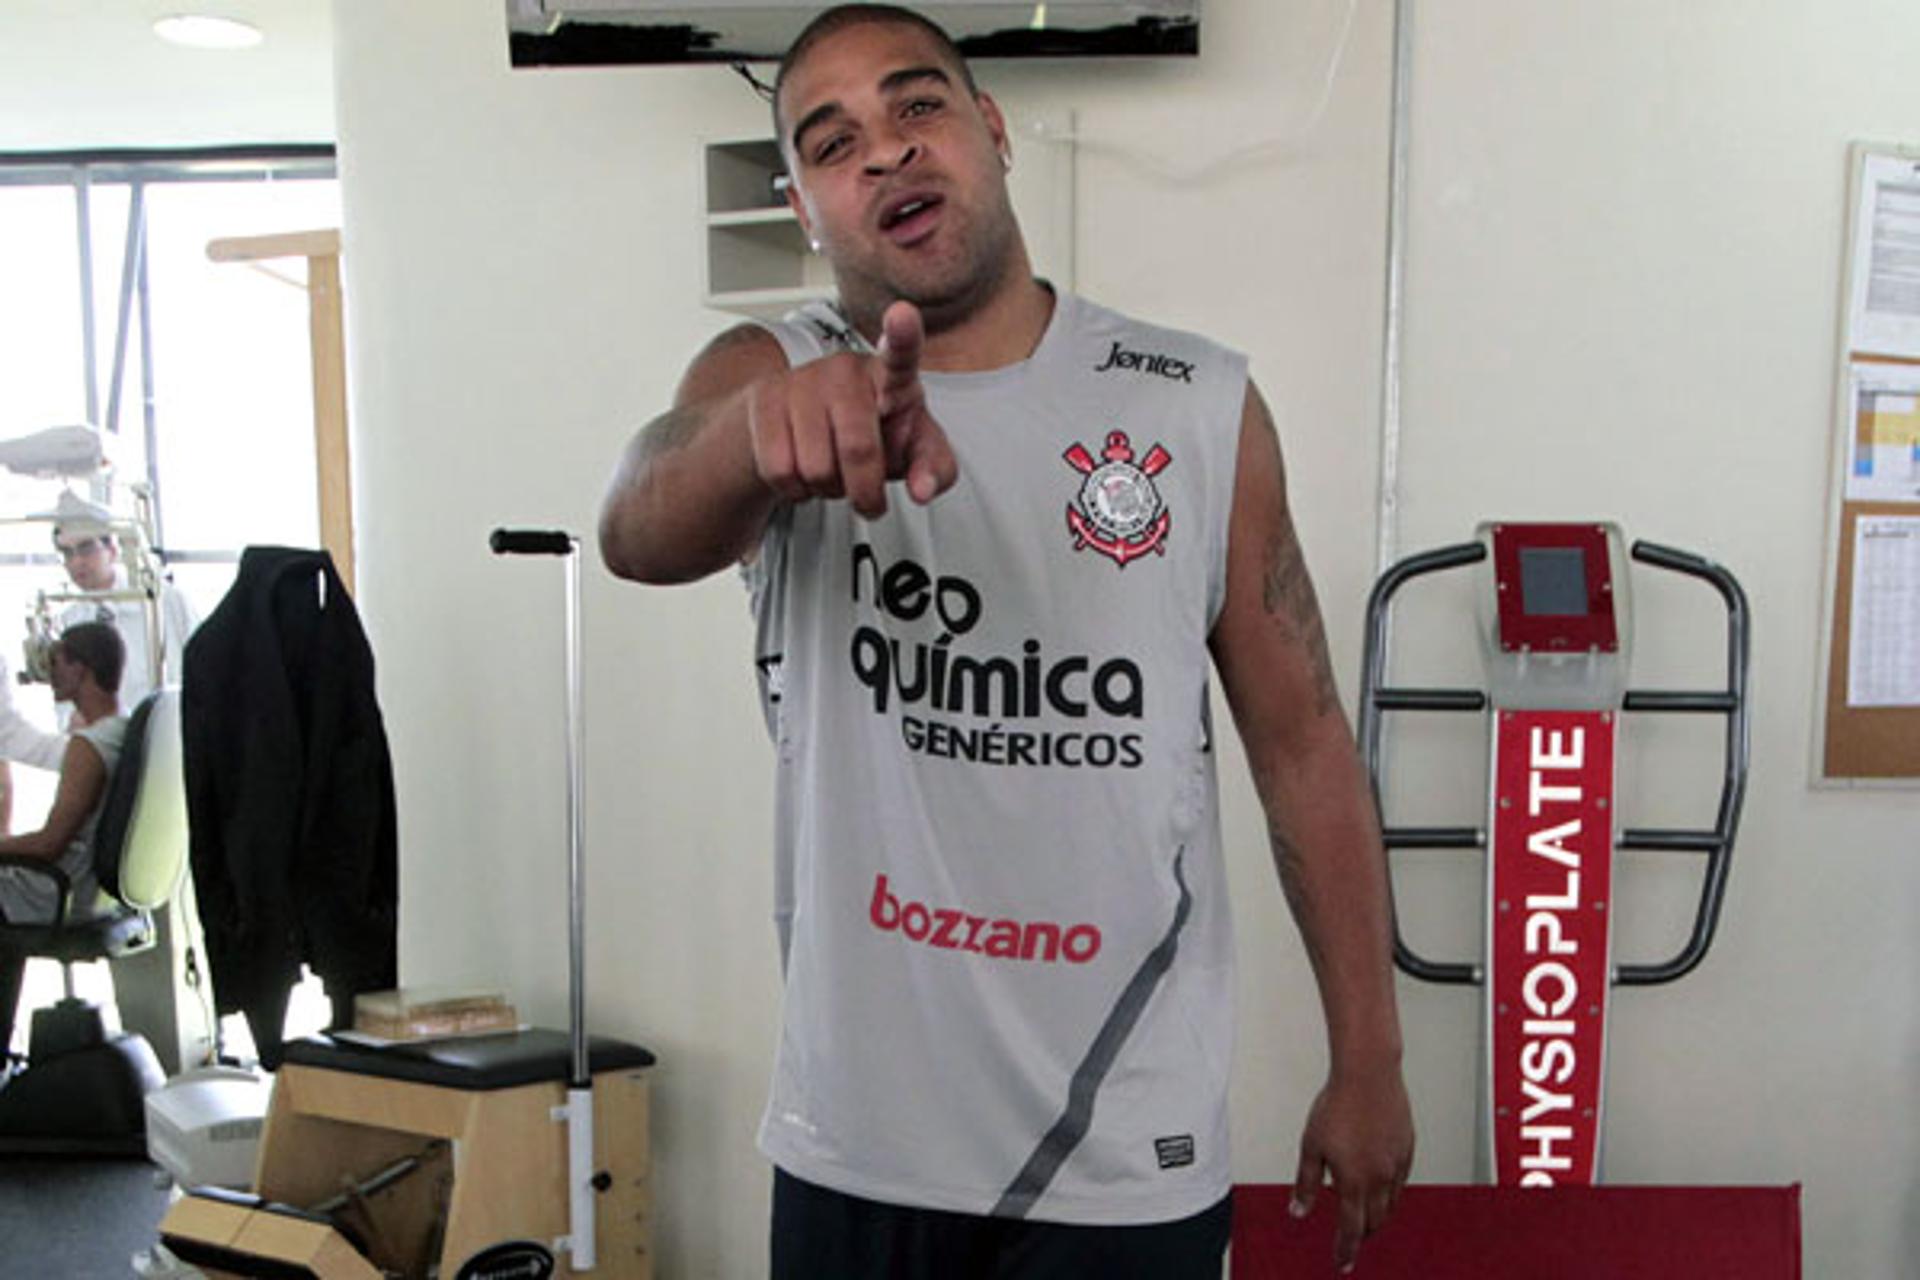 Adriano na reapresentação ao Corinthians (Foto: Miguel Schincariol)